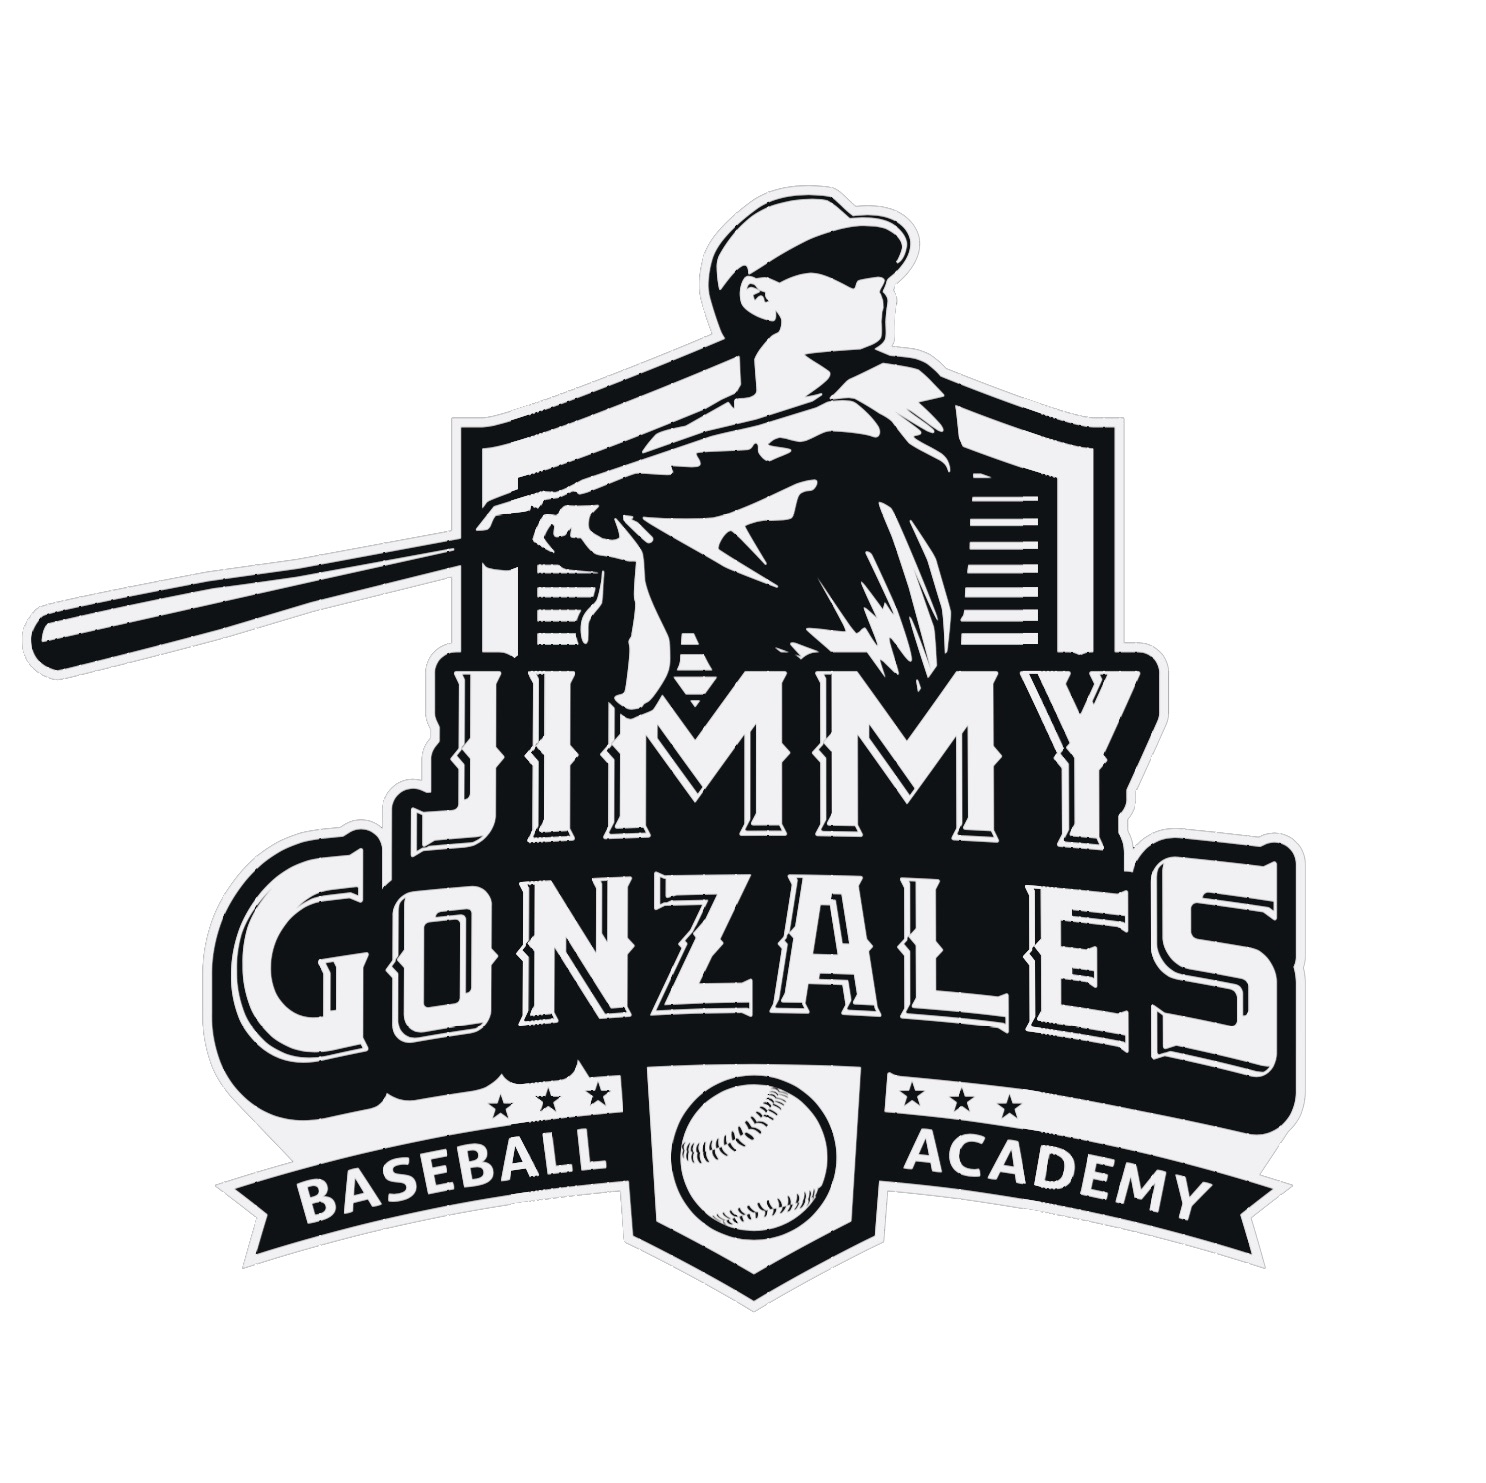 National Championship Sports Baseball Jimmy gonzales baseball